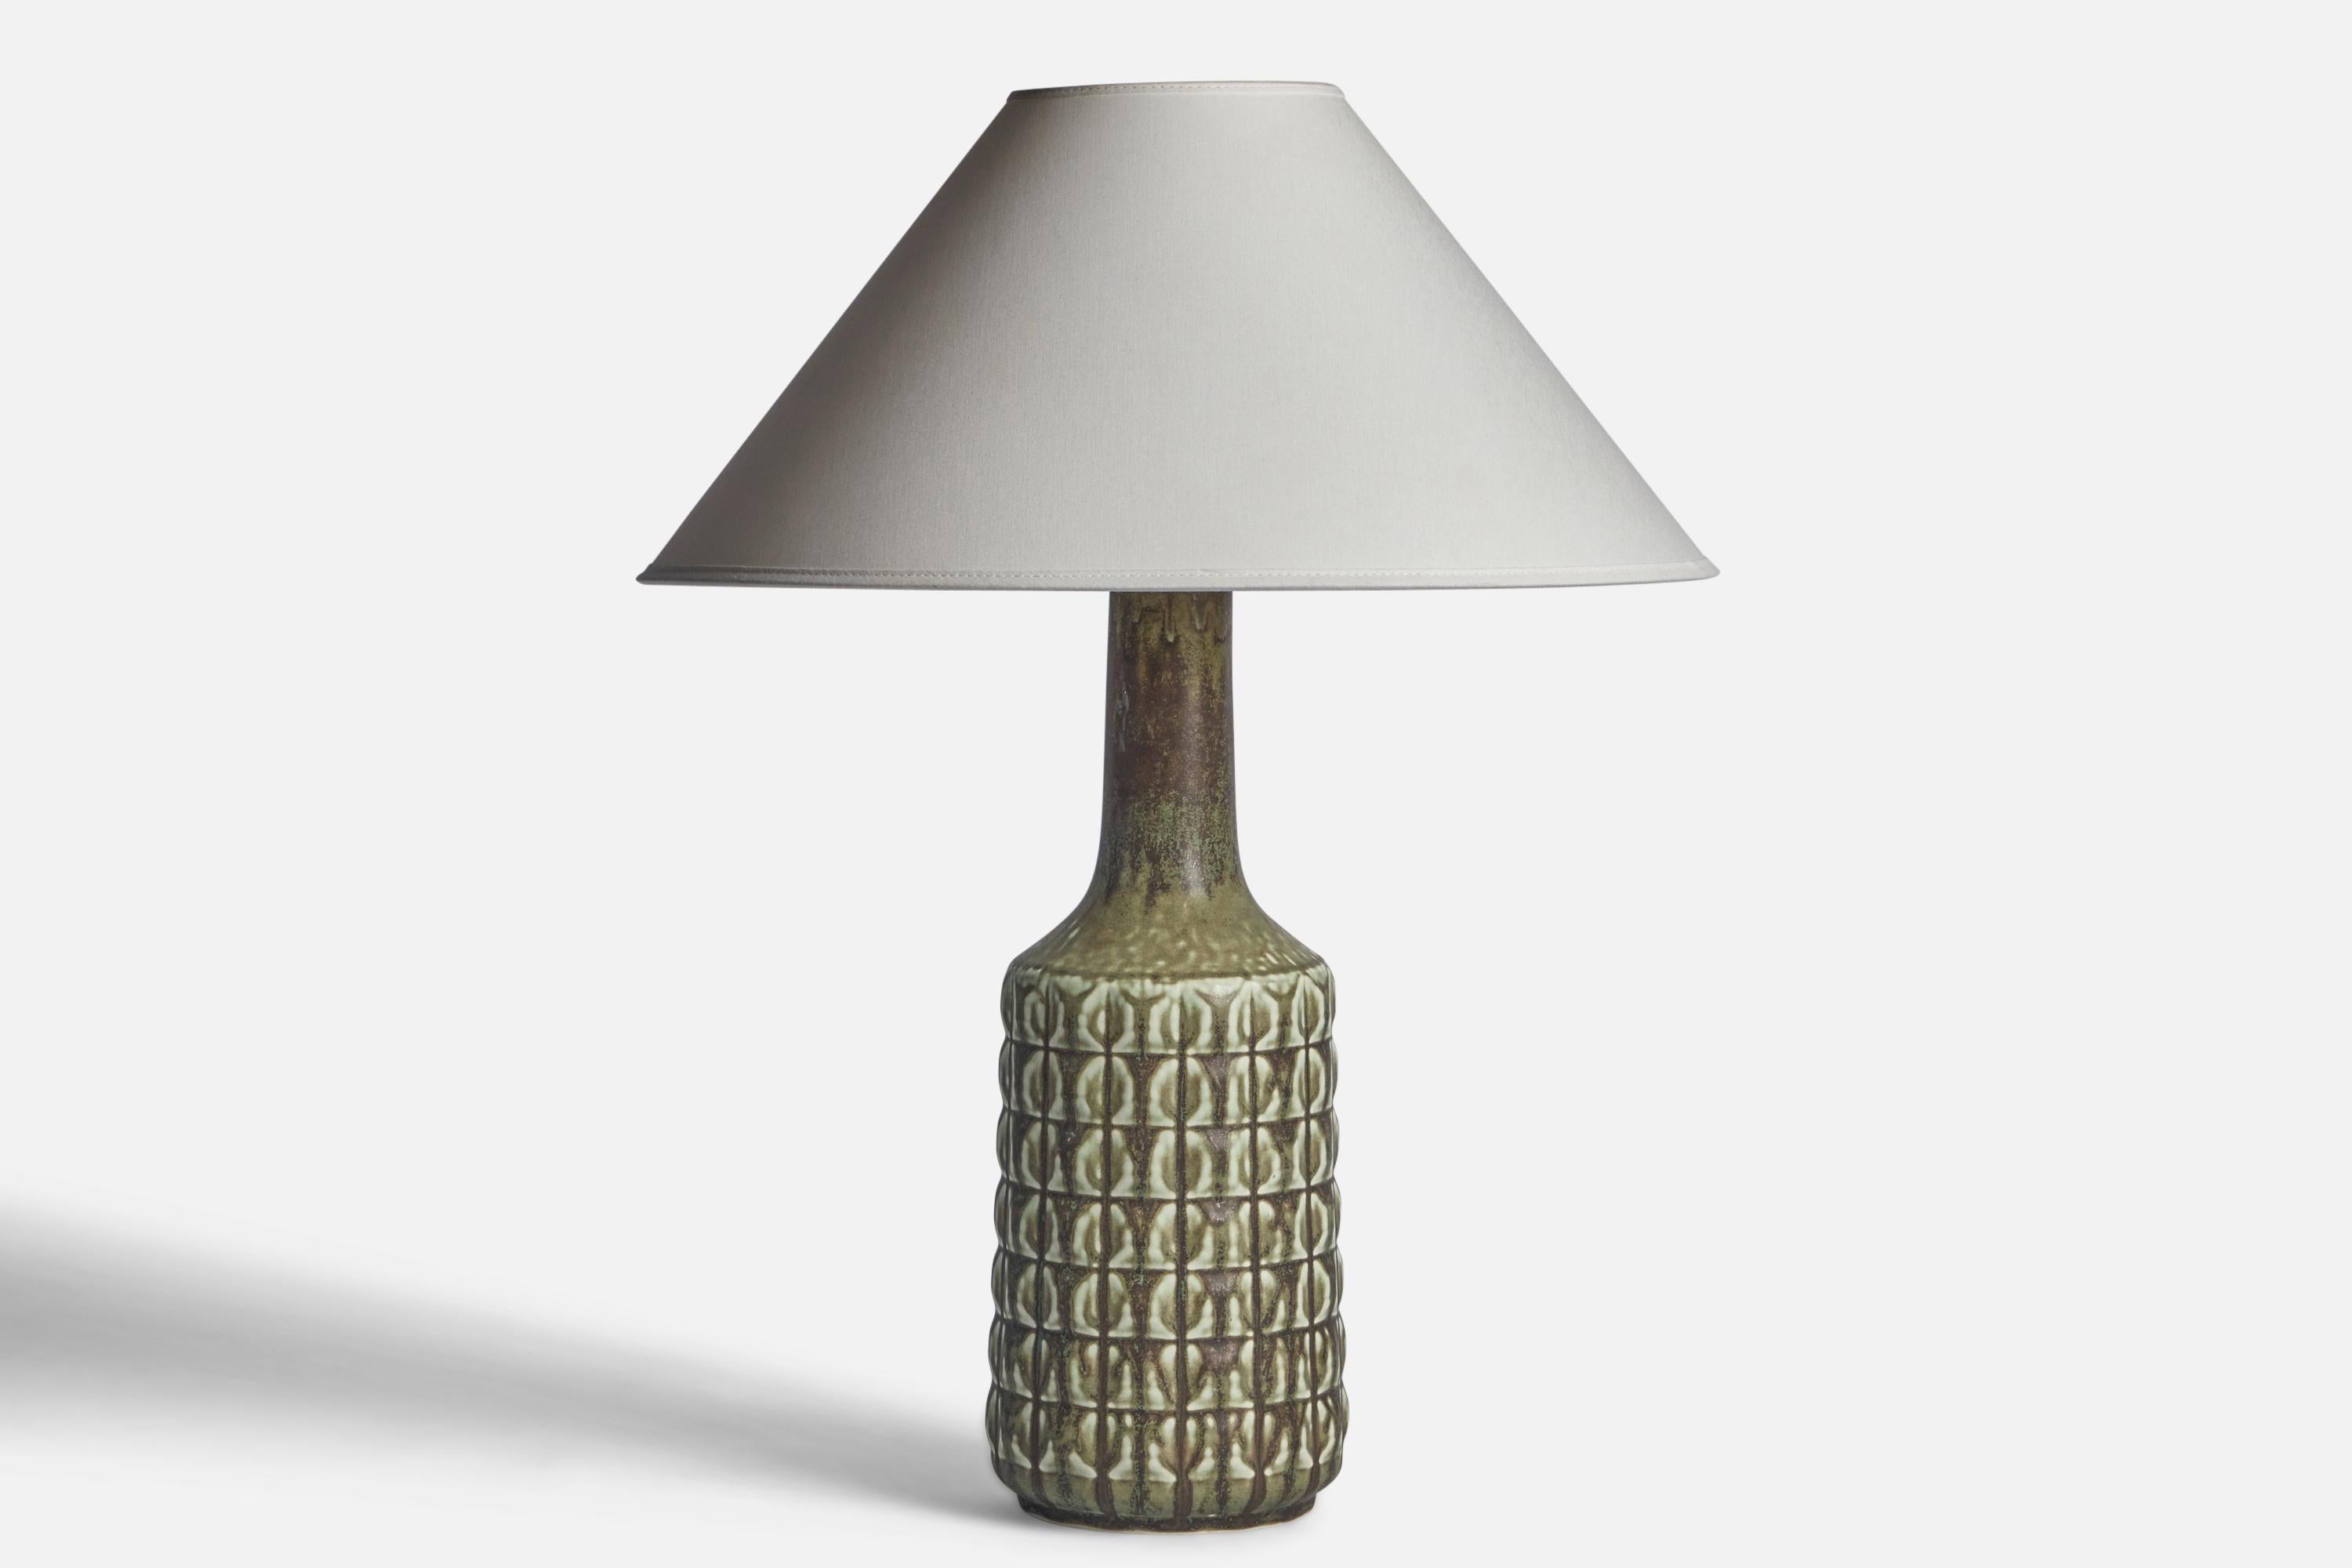 Tischlampe aus grün glasiertem Steingut, entworfen und hergestellt von Desiree, Dänemark, 1960er Jahre.

Abmessungen der Lampe (Zoll): 17